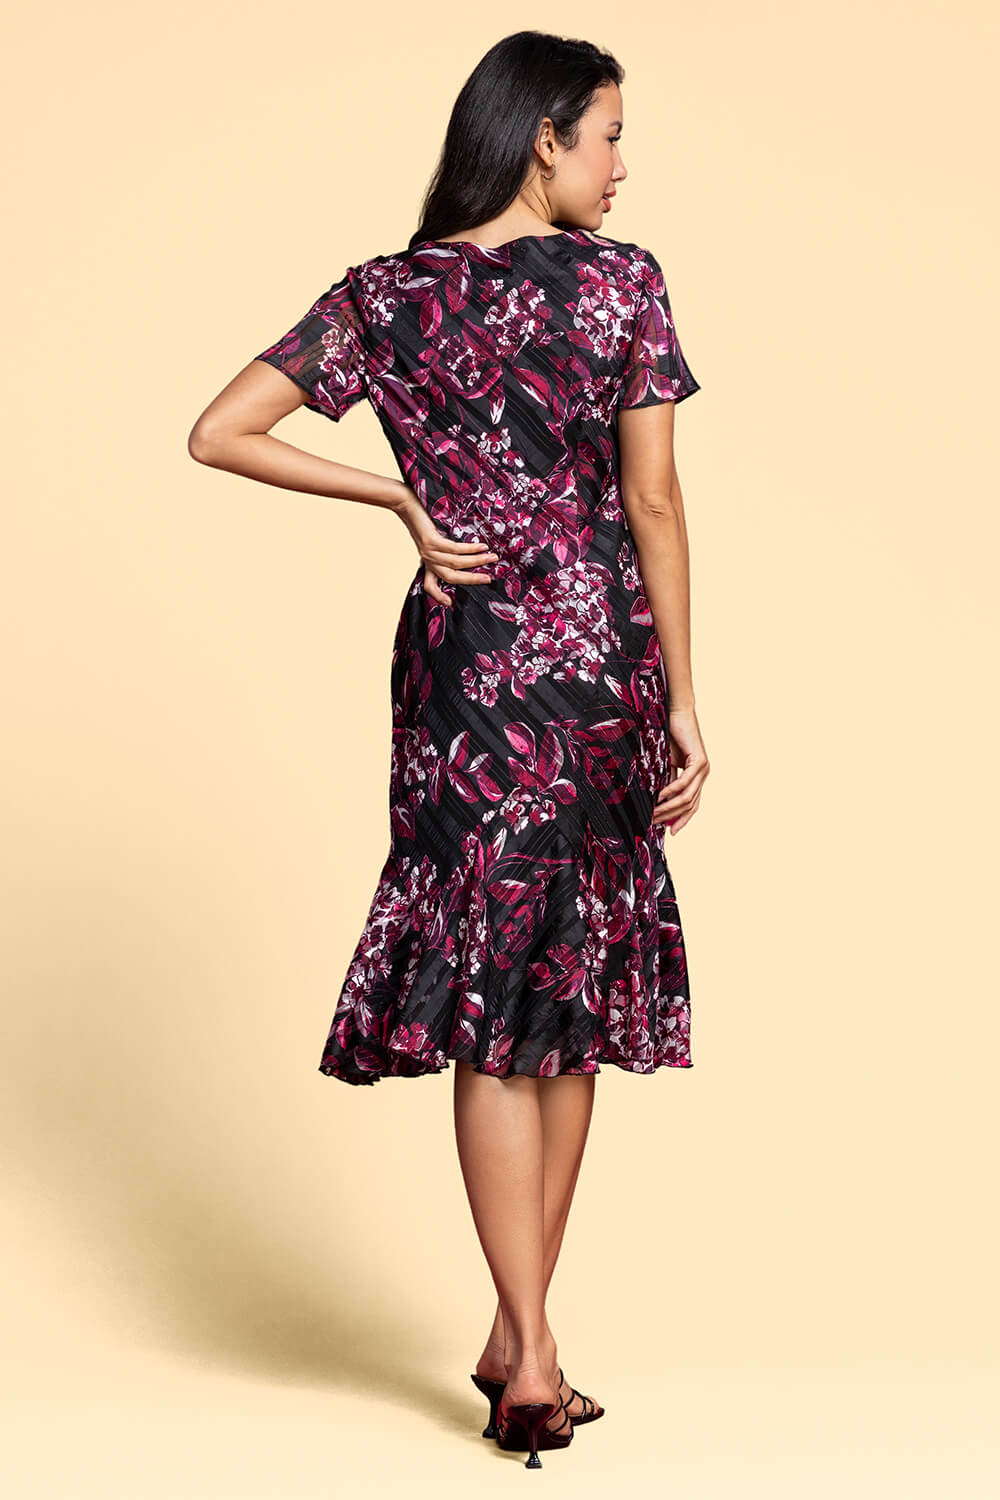 Port Floral Shimmer Fit & Flare Dress, Image 2 of 5